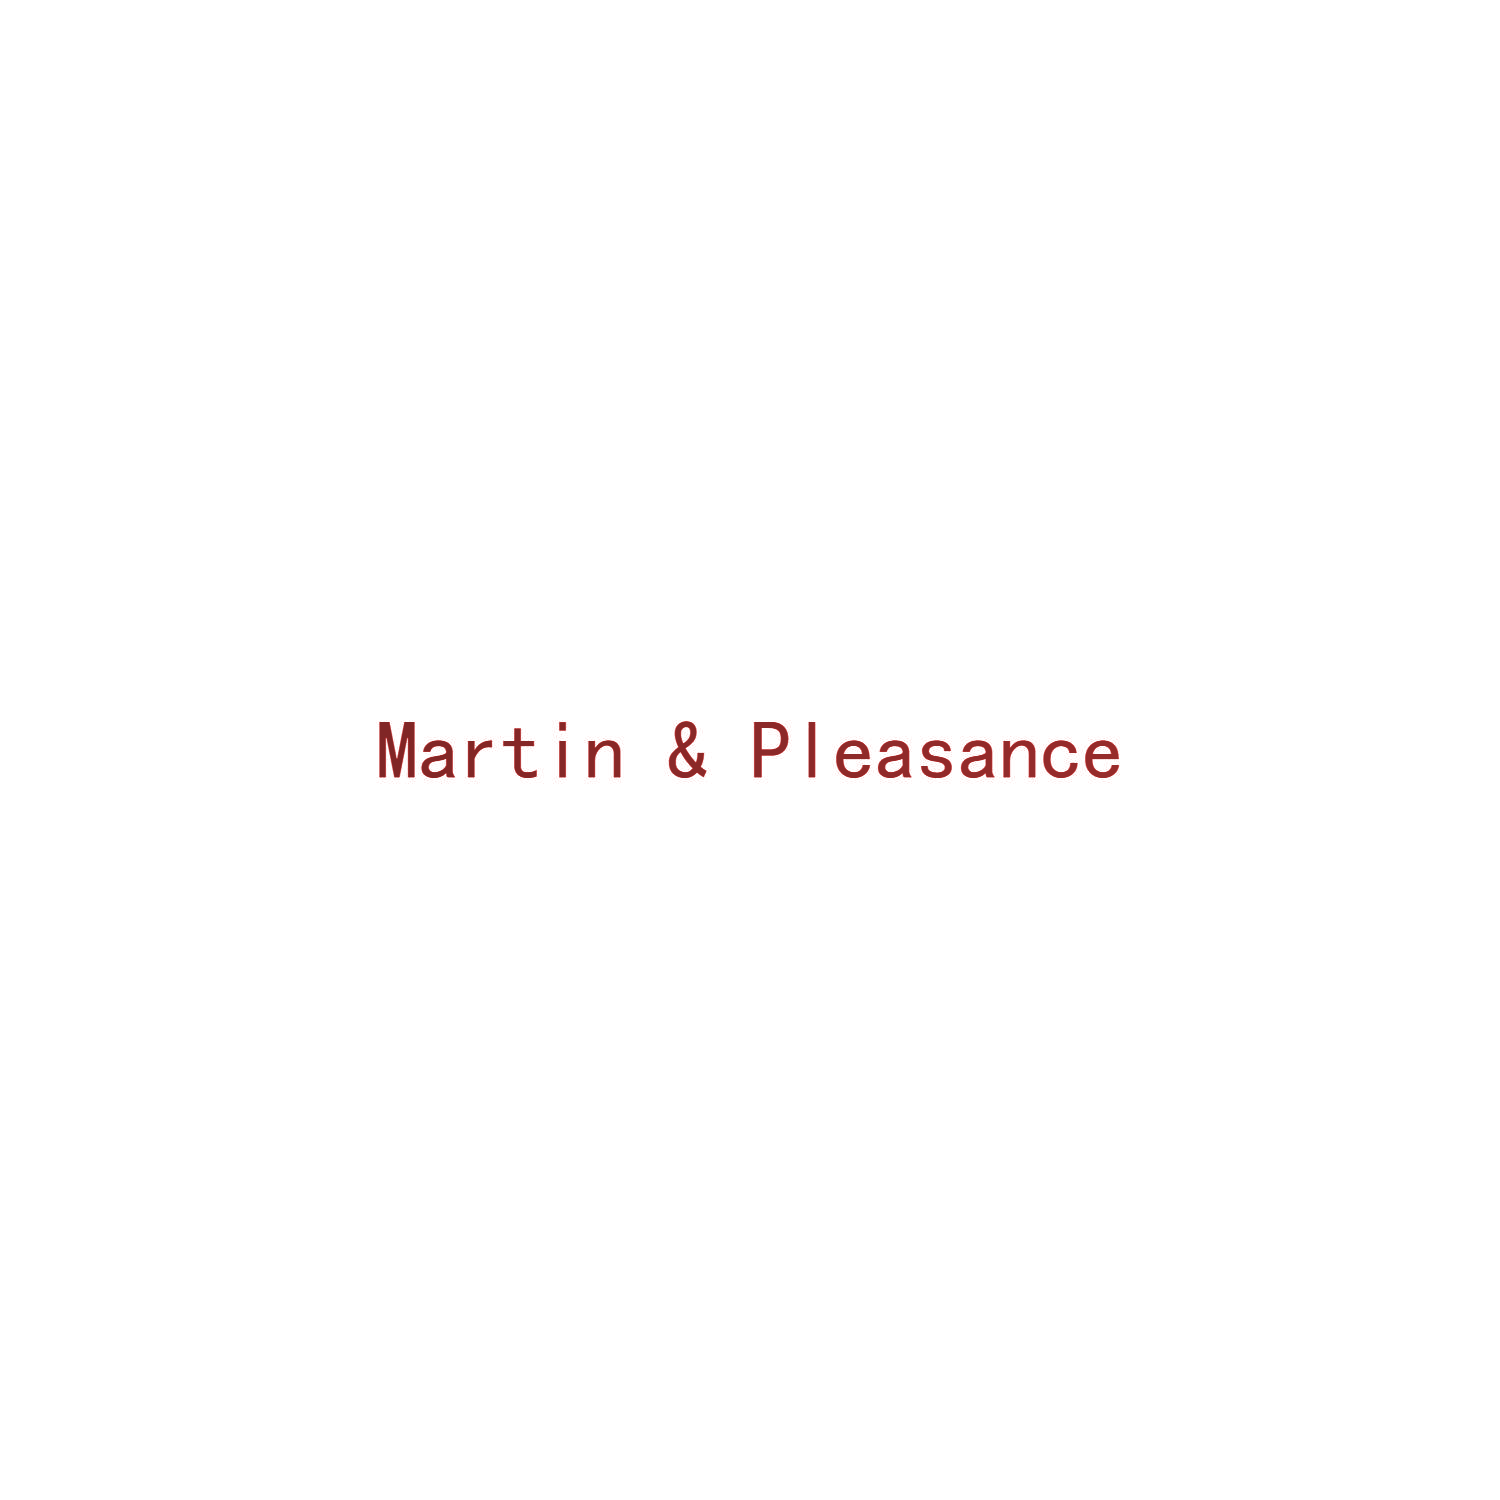 MARTIN&PLEASANCE